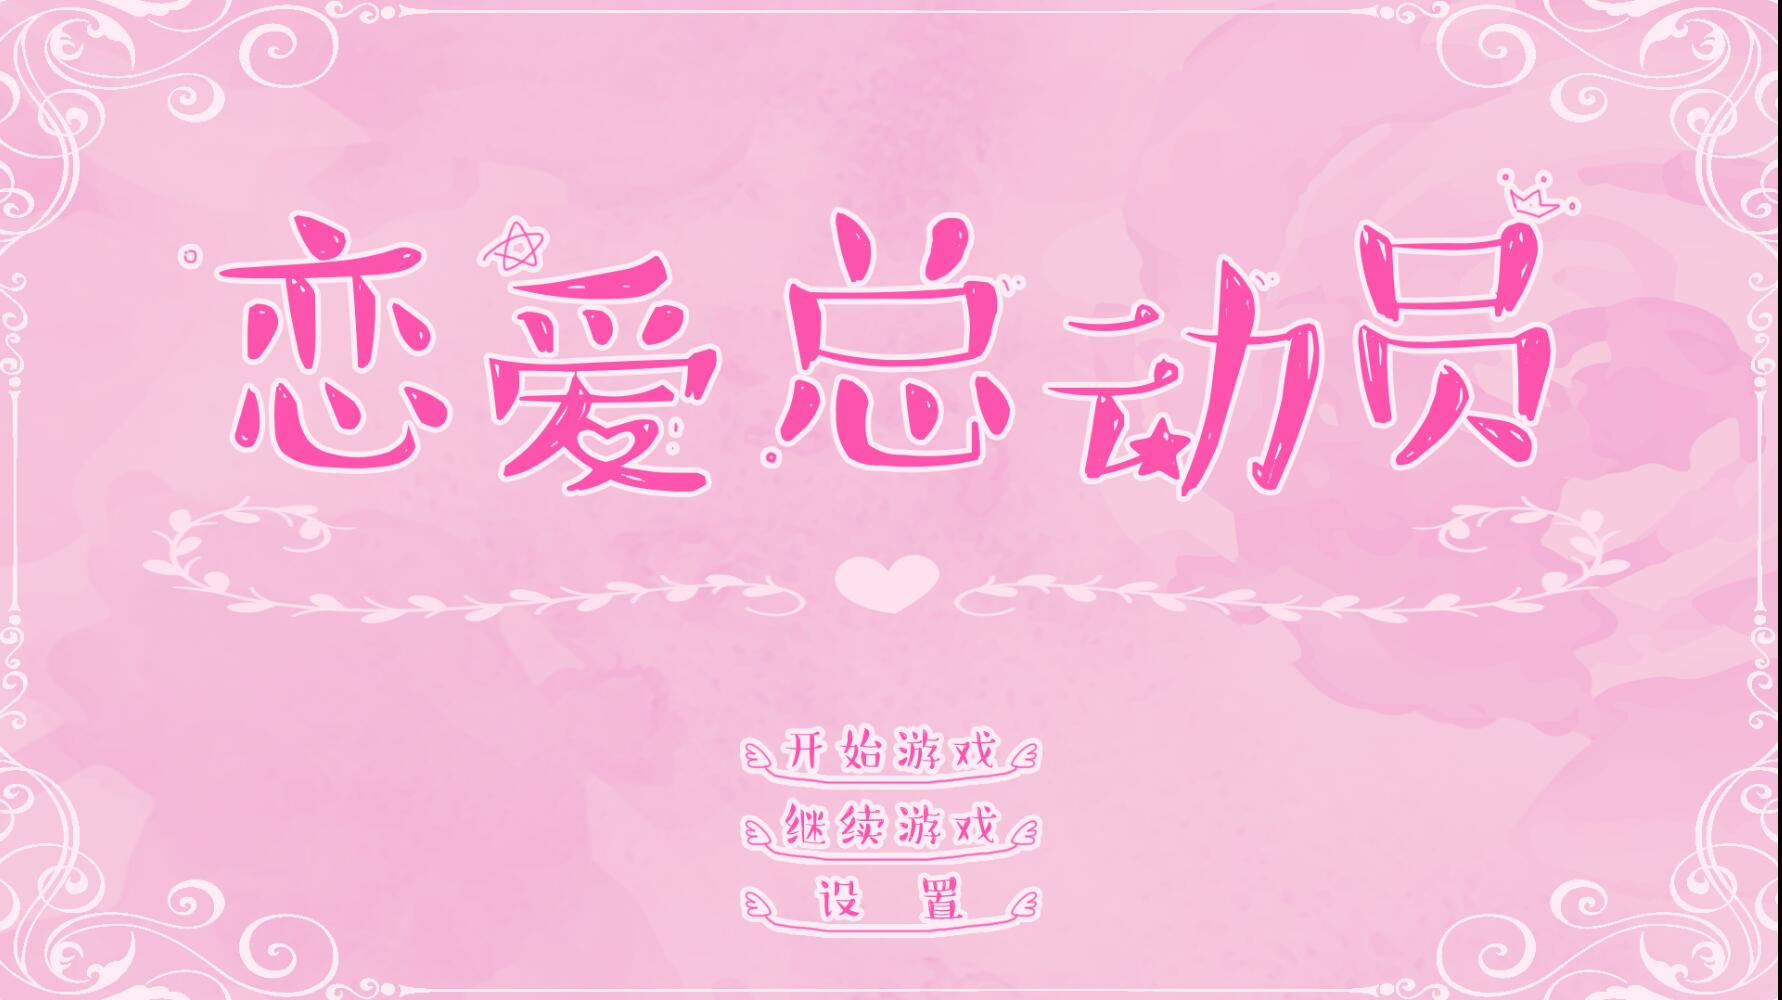 恋爱总动员 v1.18国产文字类中文单机游戏  恋爱的感觉又来了